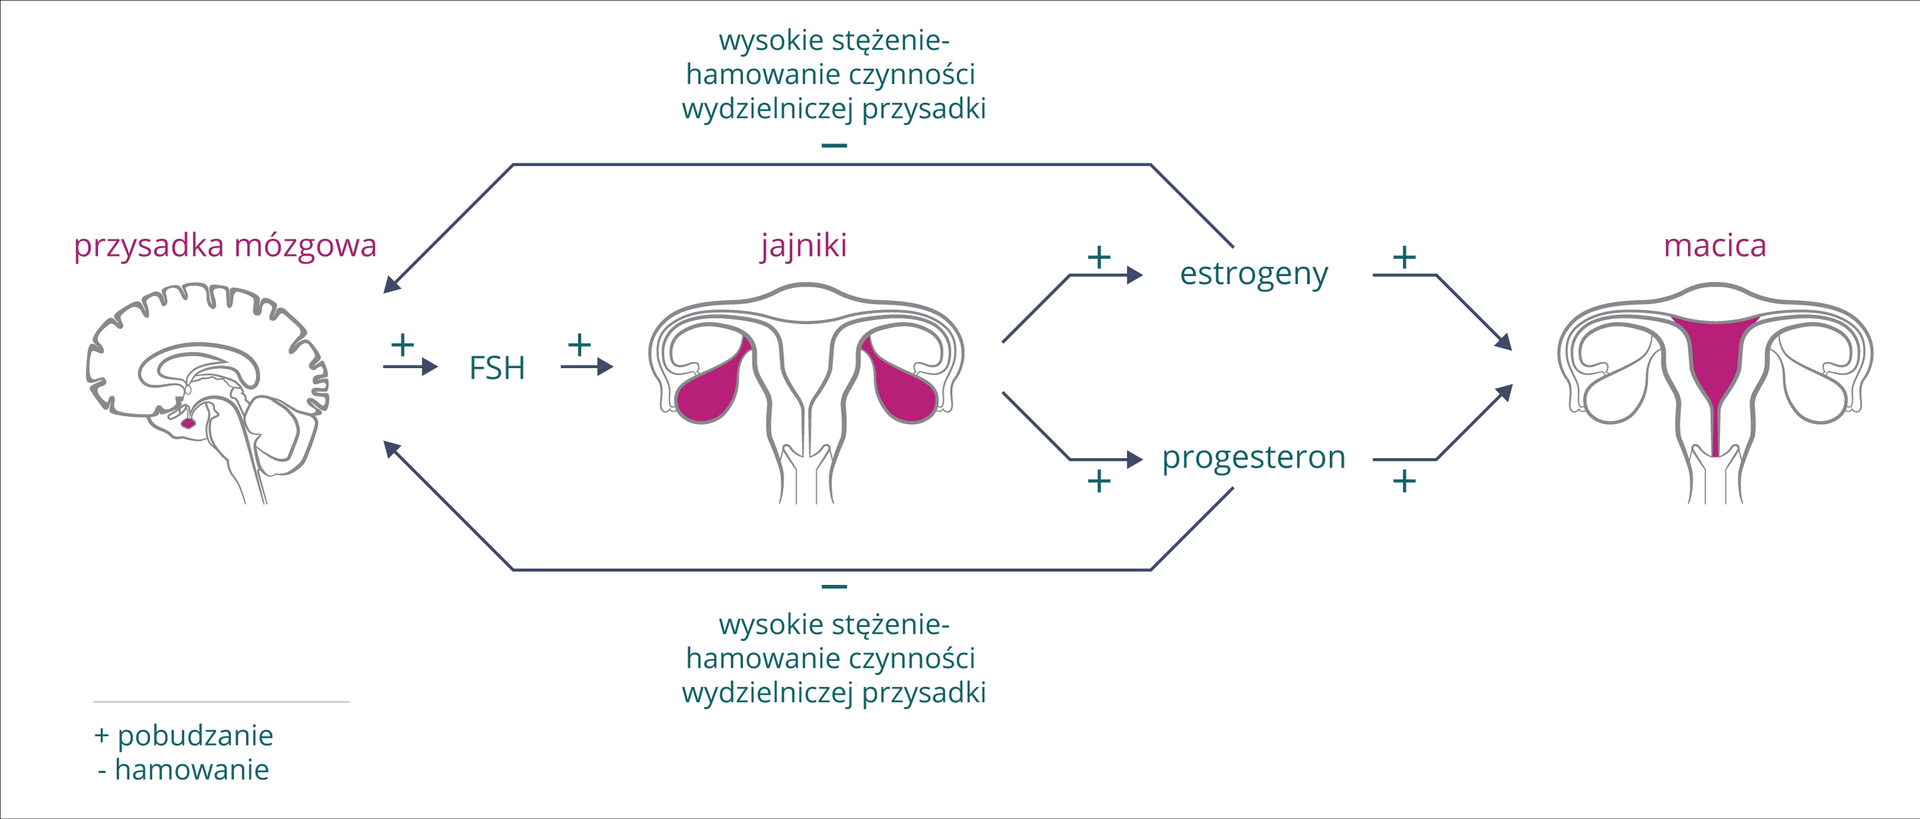 Schemat przedstawia sposób regulacji hormonalnej cyklu miesiączkowego. Znak plus oznacza pobudzanie, znak minus hamowanie. Z lewej szary obrys mózgu z karmazynową przysadką mózgową. W prawo pozioma strzałka, hormon FSH z przysadki pobudza jajniki, na środkowym rysunku zaznaczone kolorem. Jajniki produkują estrogeny i progesteron, wpływające pobudzająco na macicę (zaznaczona kolorem) . Jednocześnie estrogeny i progesteron hamują wydzielanie przysadki mózgowej (długie strzałki u góry i u dołu).